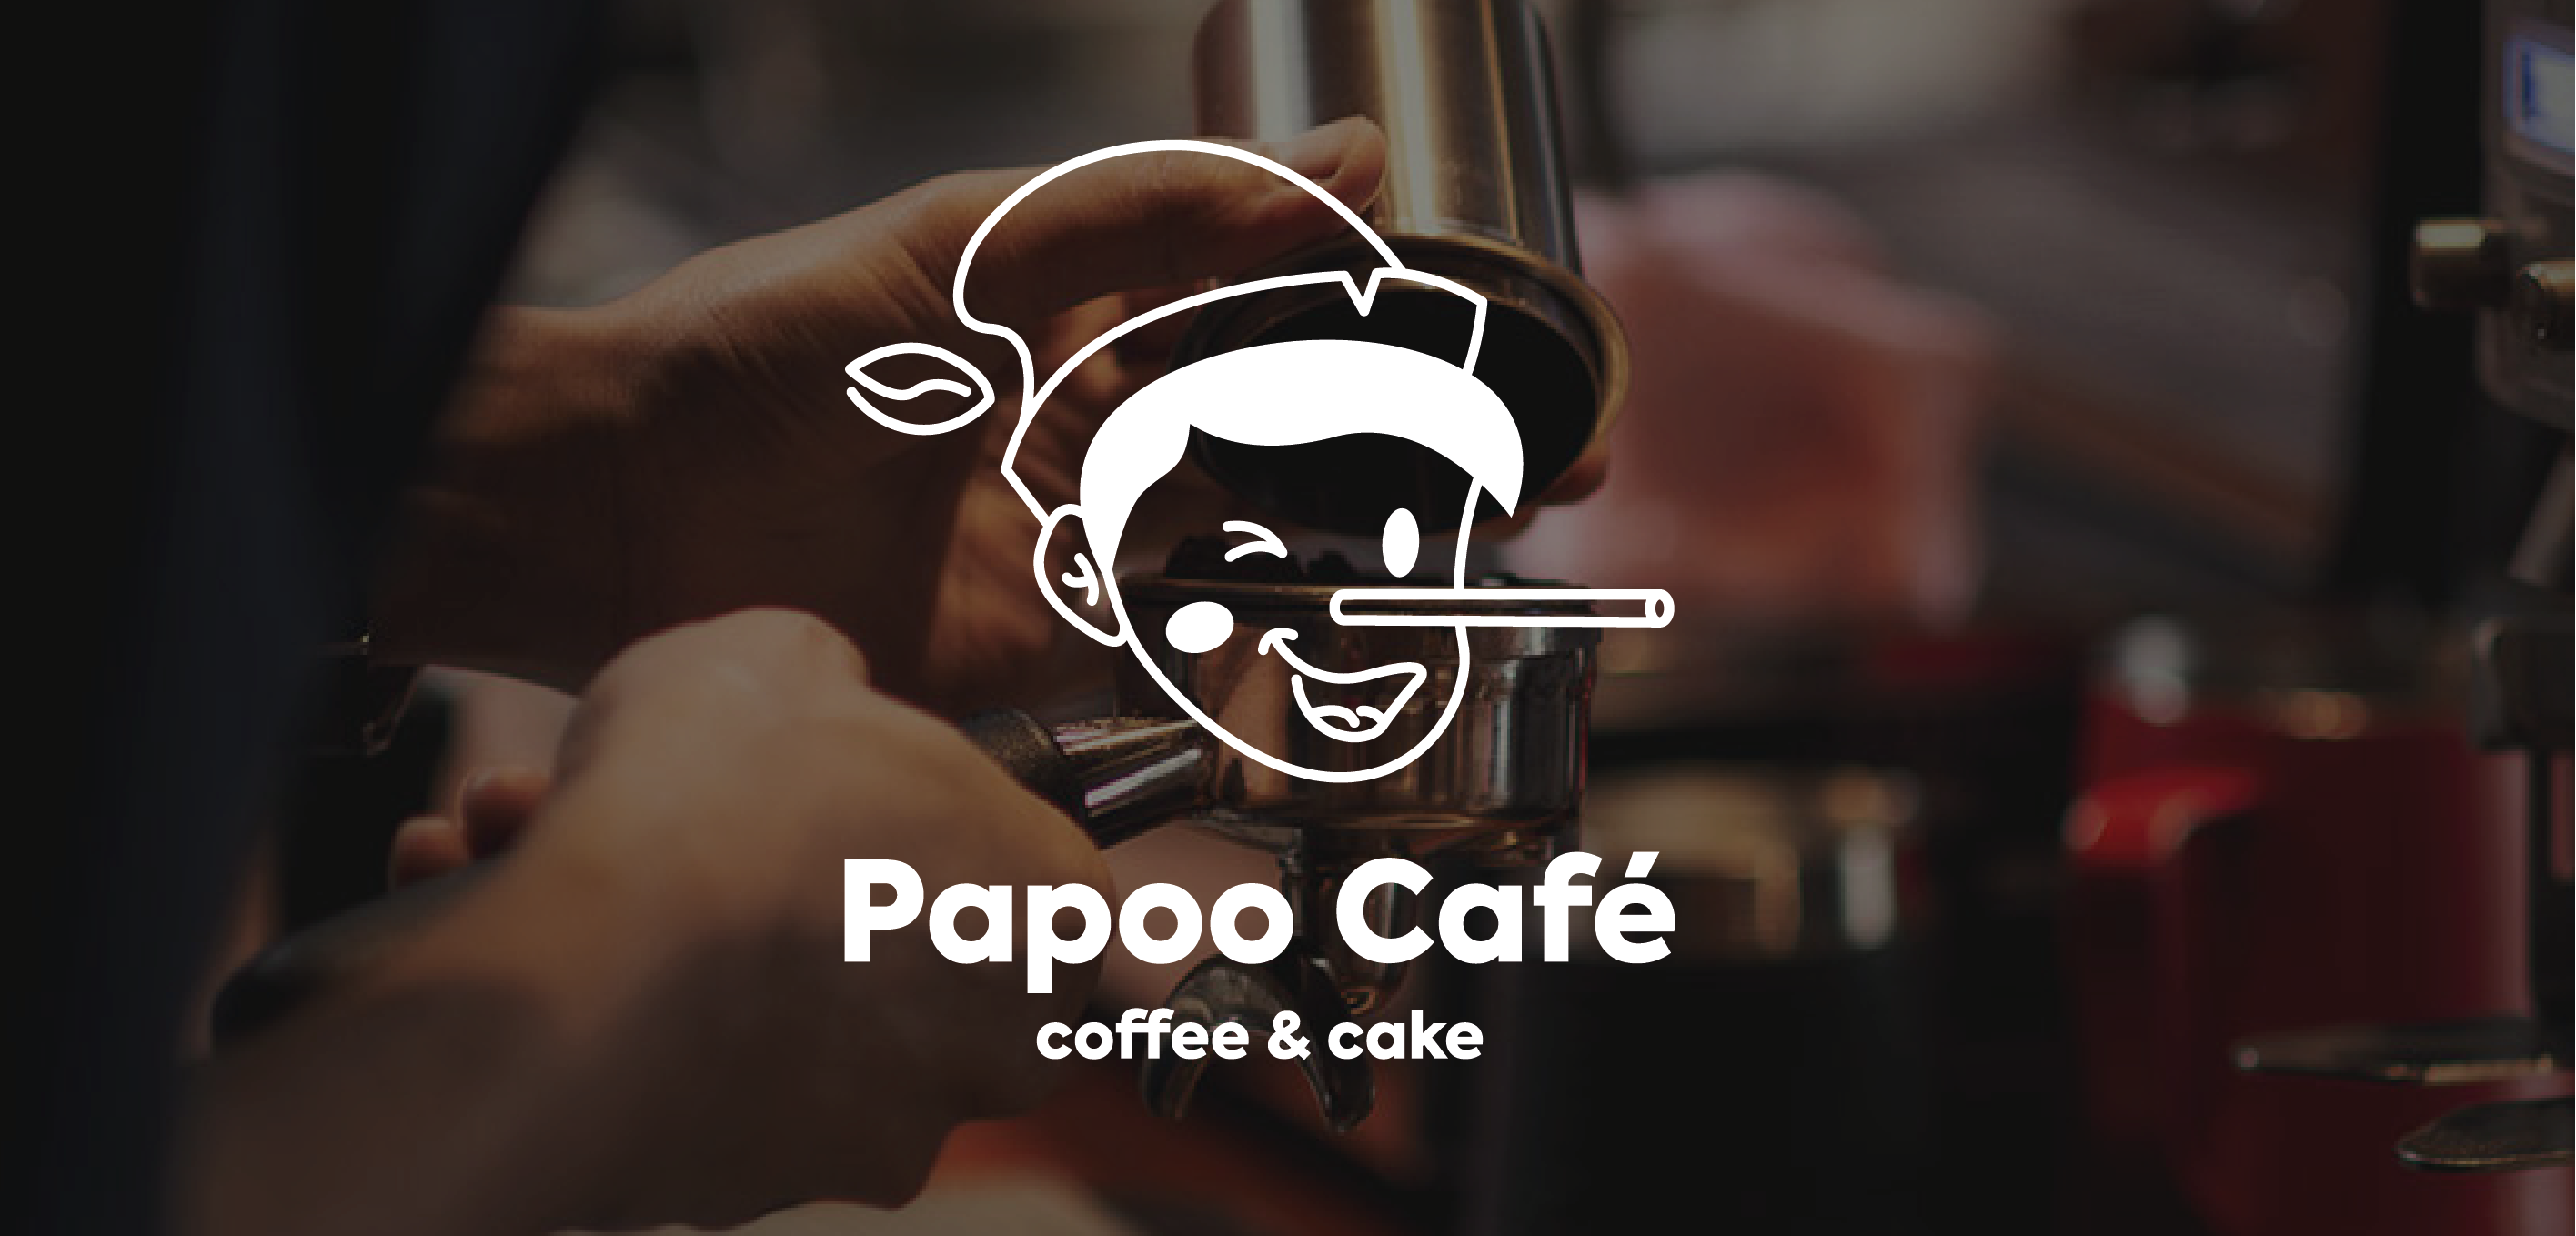 Papo Café Branding